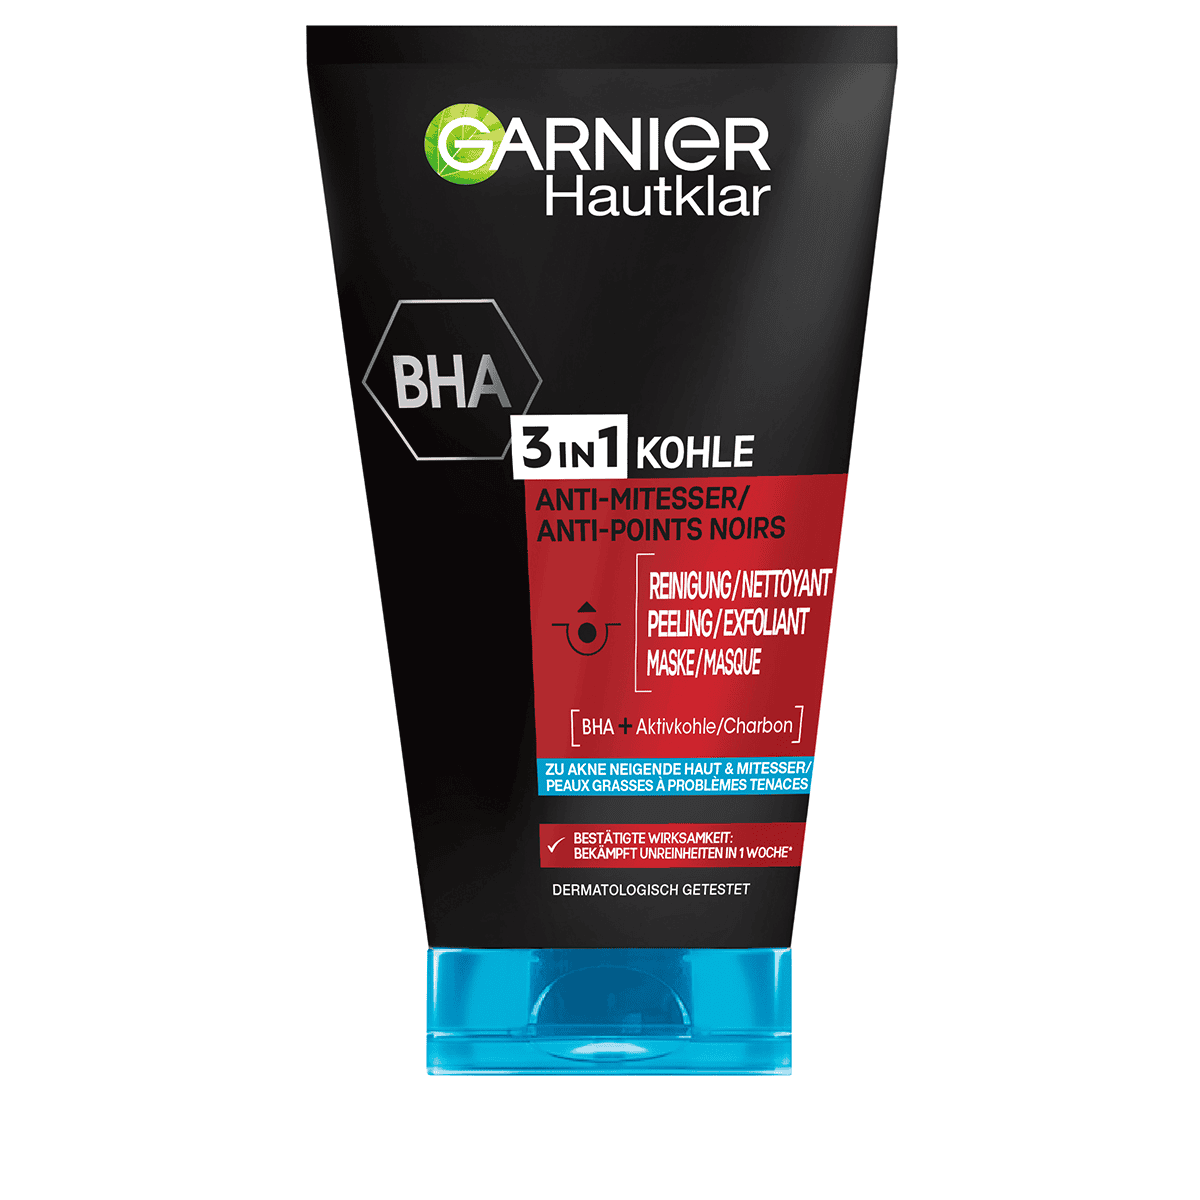 Peeling Garnier • Hautklar und • Maske Anti-Mitesser 3-in-1 Reinigung,